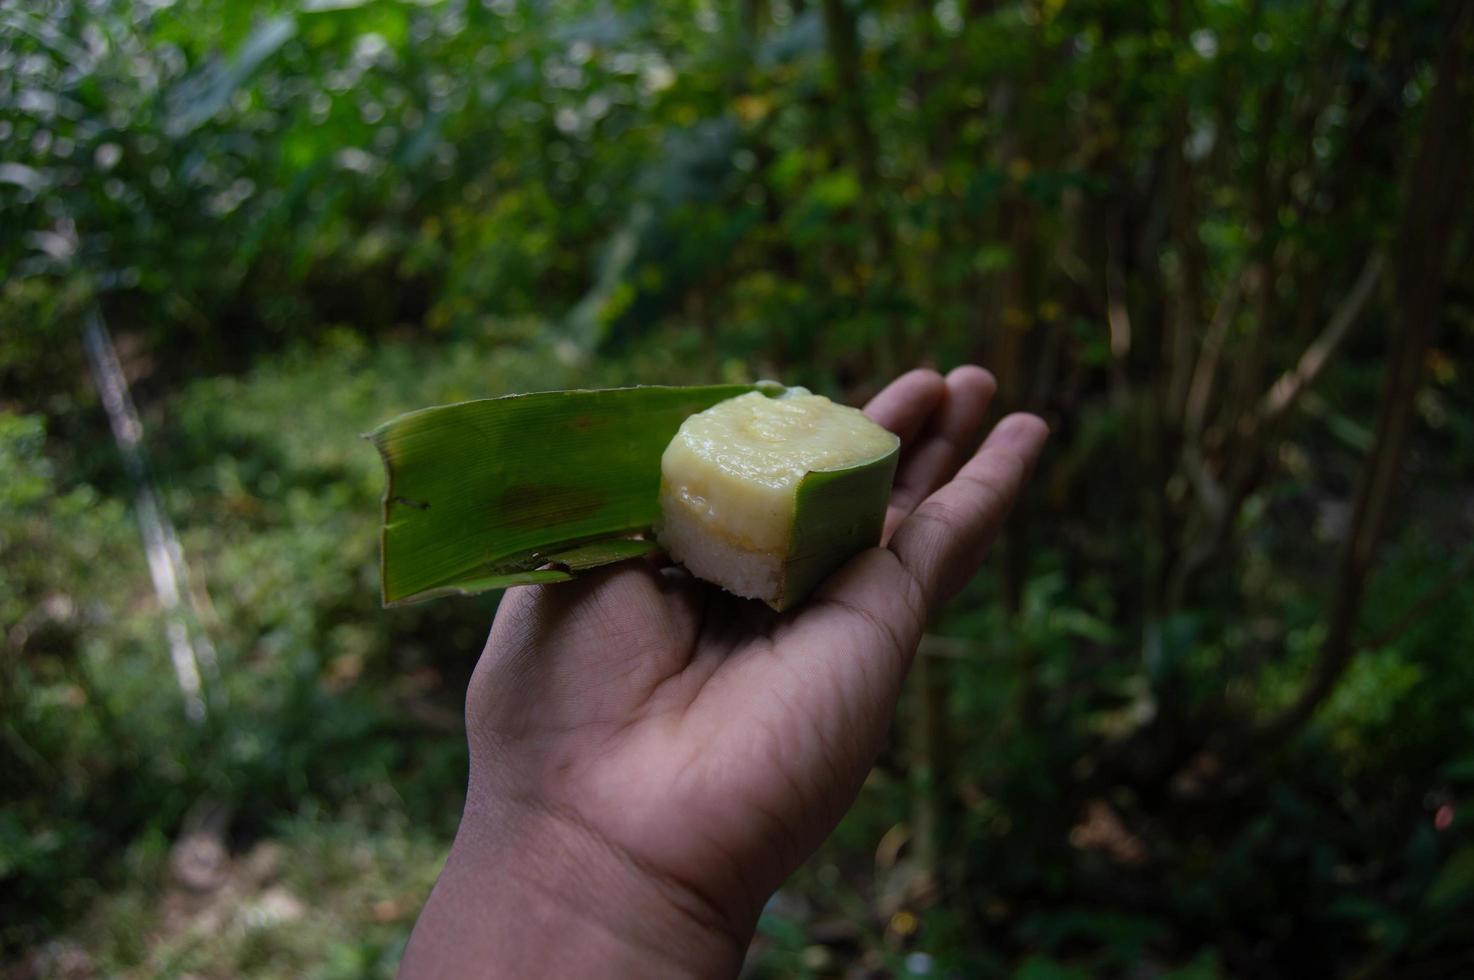 zoete snacks van kleefrijst met durian topping die iemand vasthoudt. Indonesische traditionele gerechten. foto